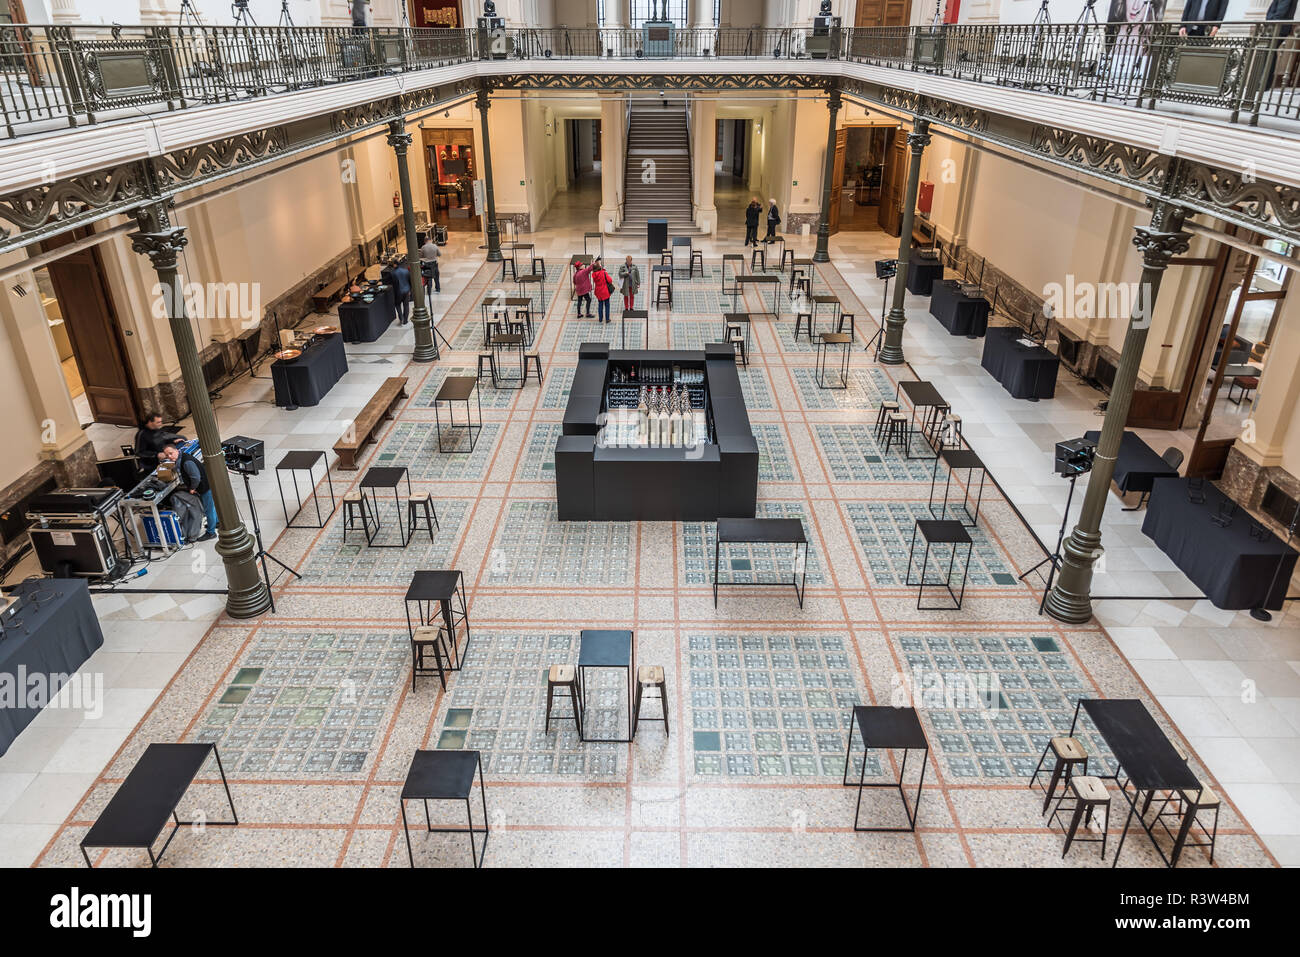 Le hall d'entrée du Musée royal de l'Art et d'histoire à Bruxelles, Belgique Banque D'Images